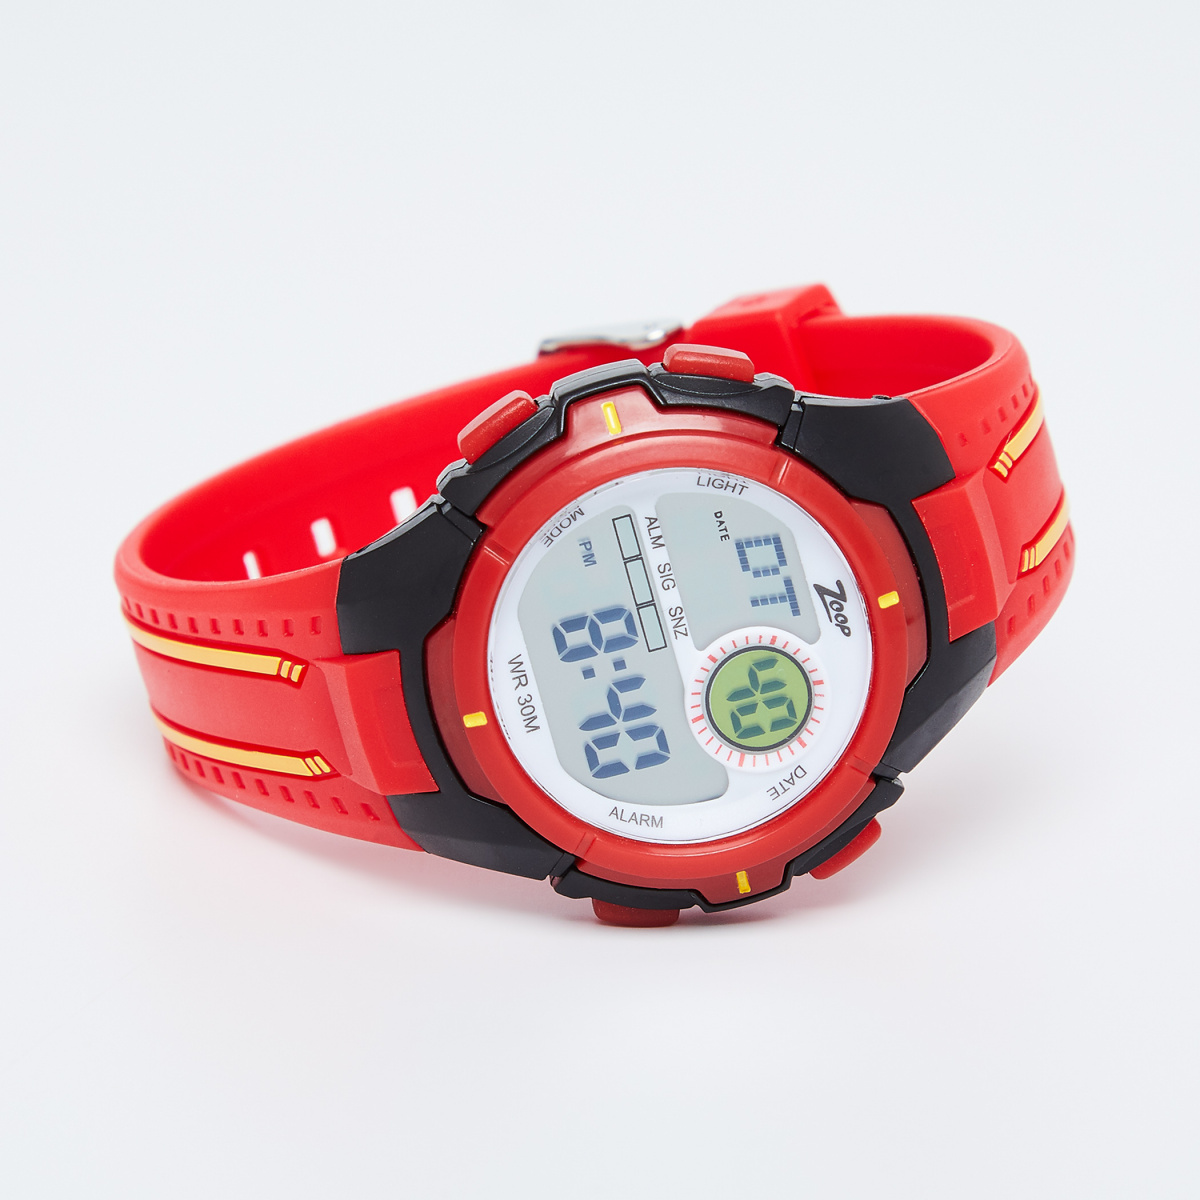 

ZOOP Water-Resistant Digital Watch - 16008PP01